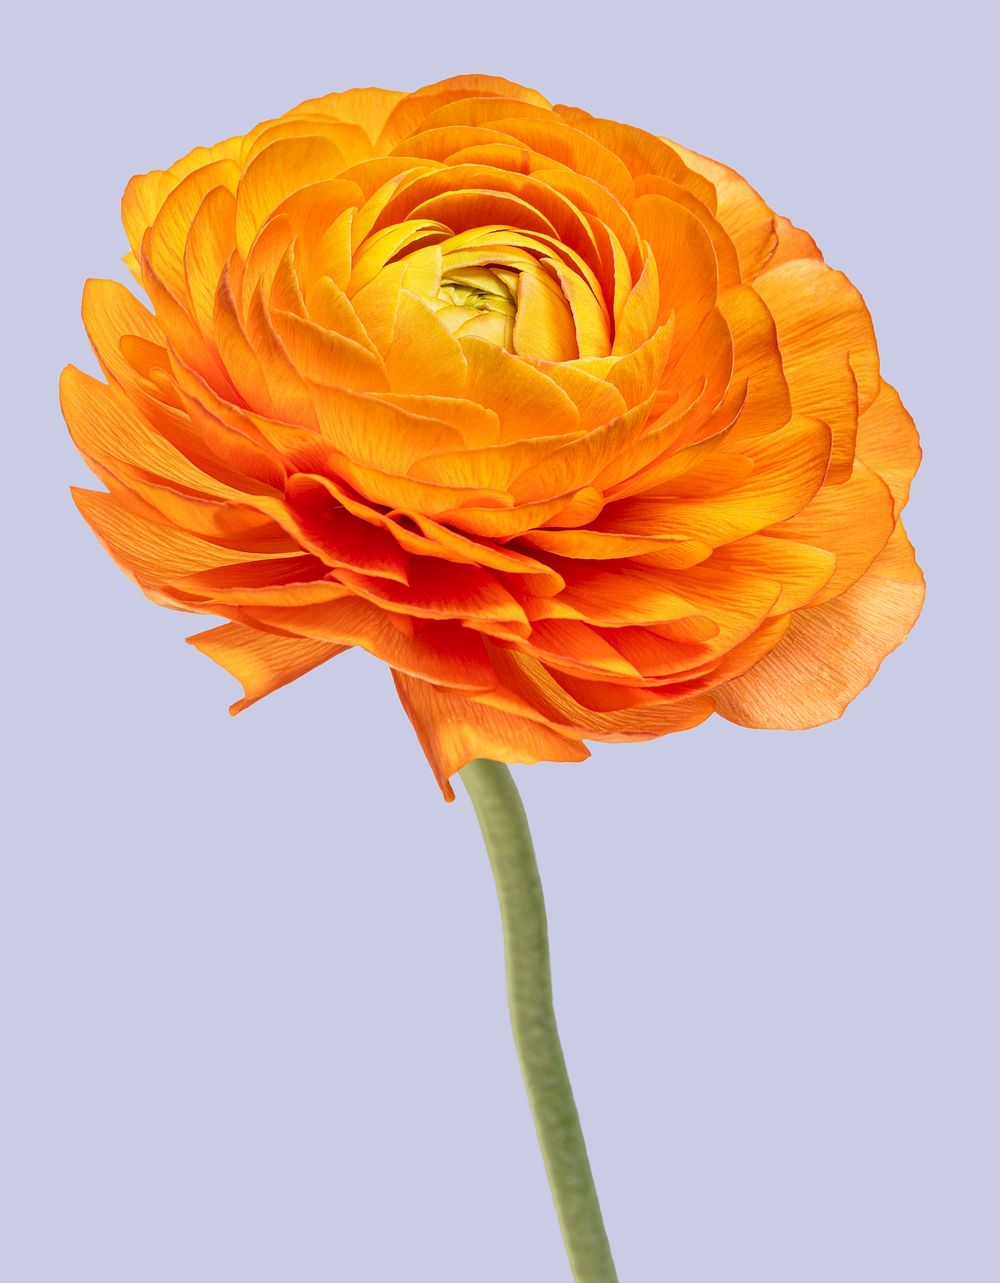 Bright orange ranunculus flower